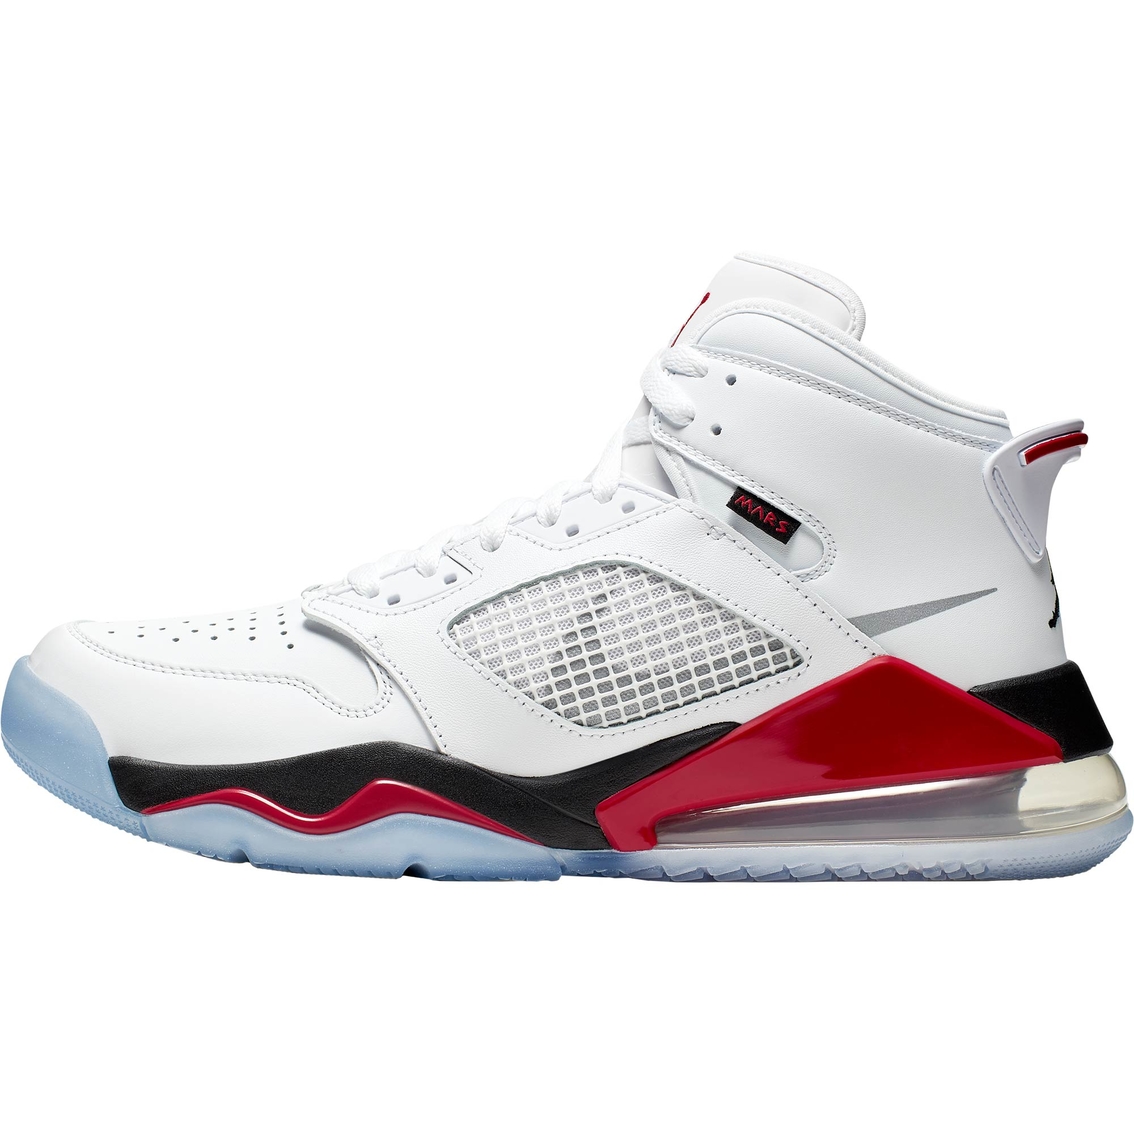 Jordan Men's Mars 270 Shoes - Image 2 of 6